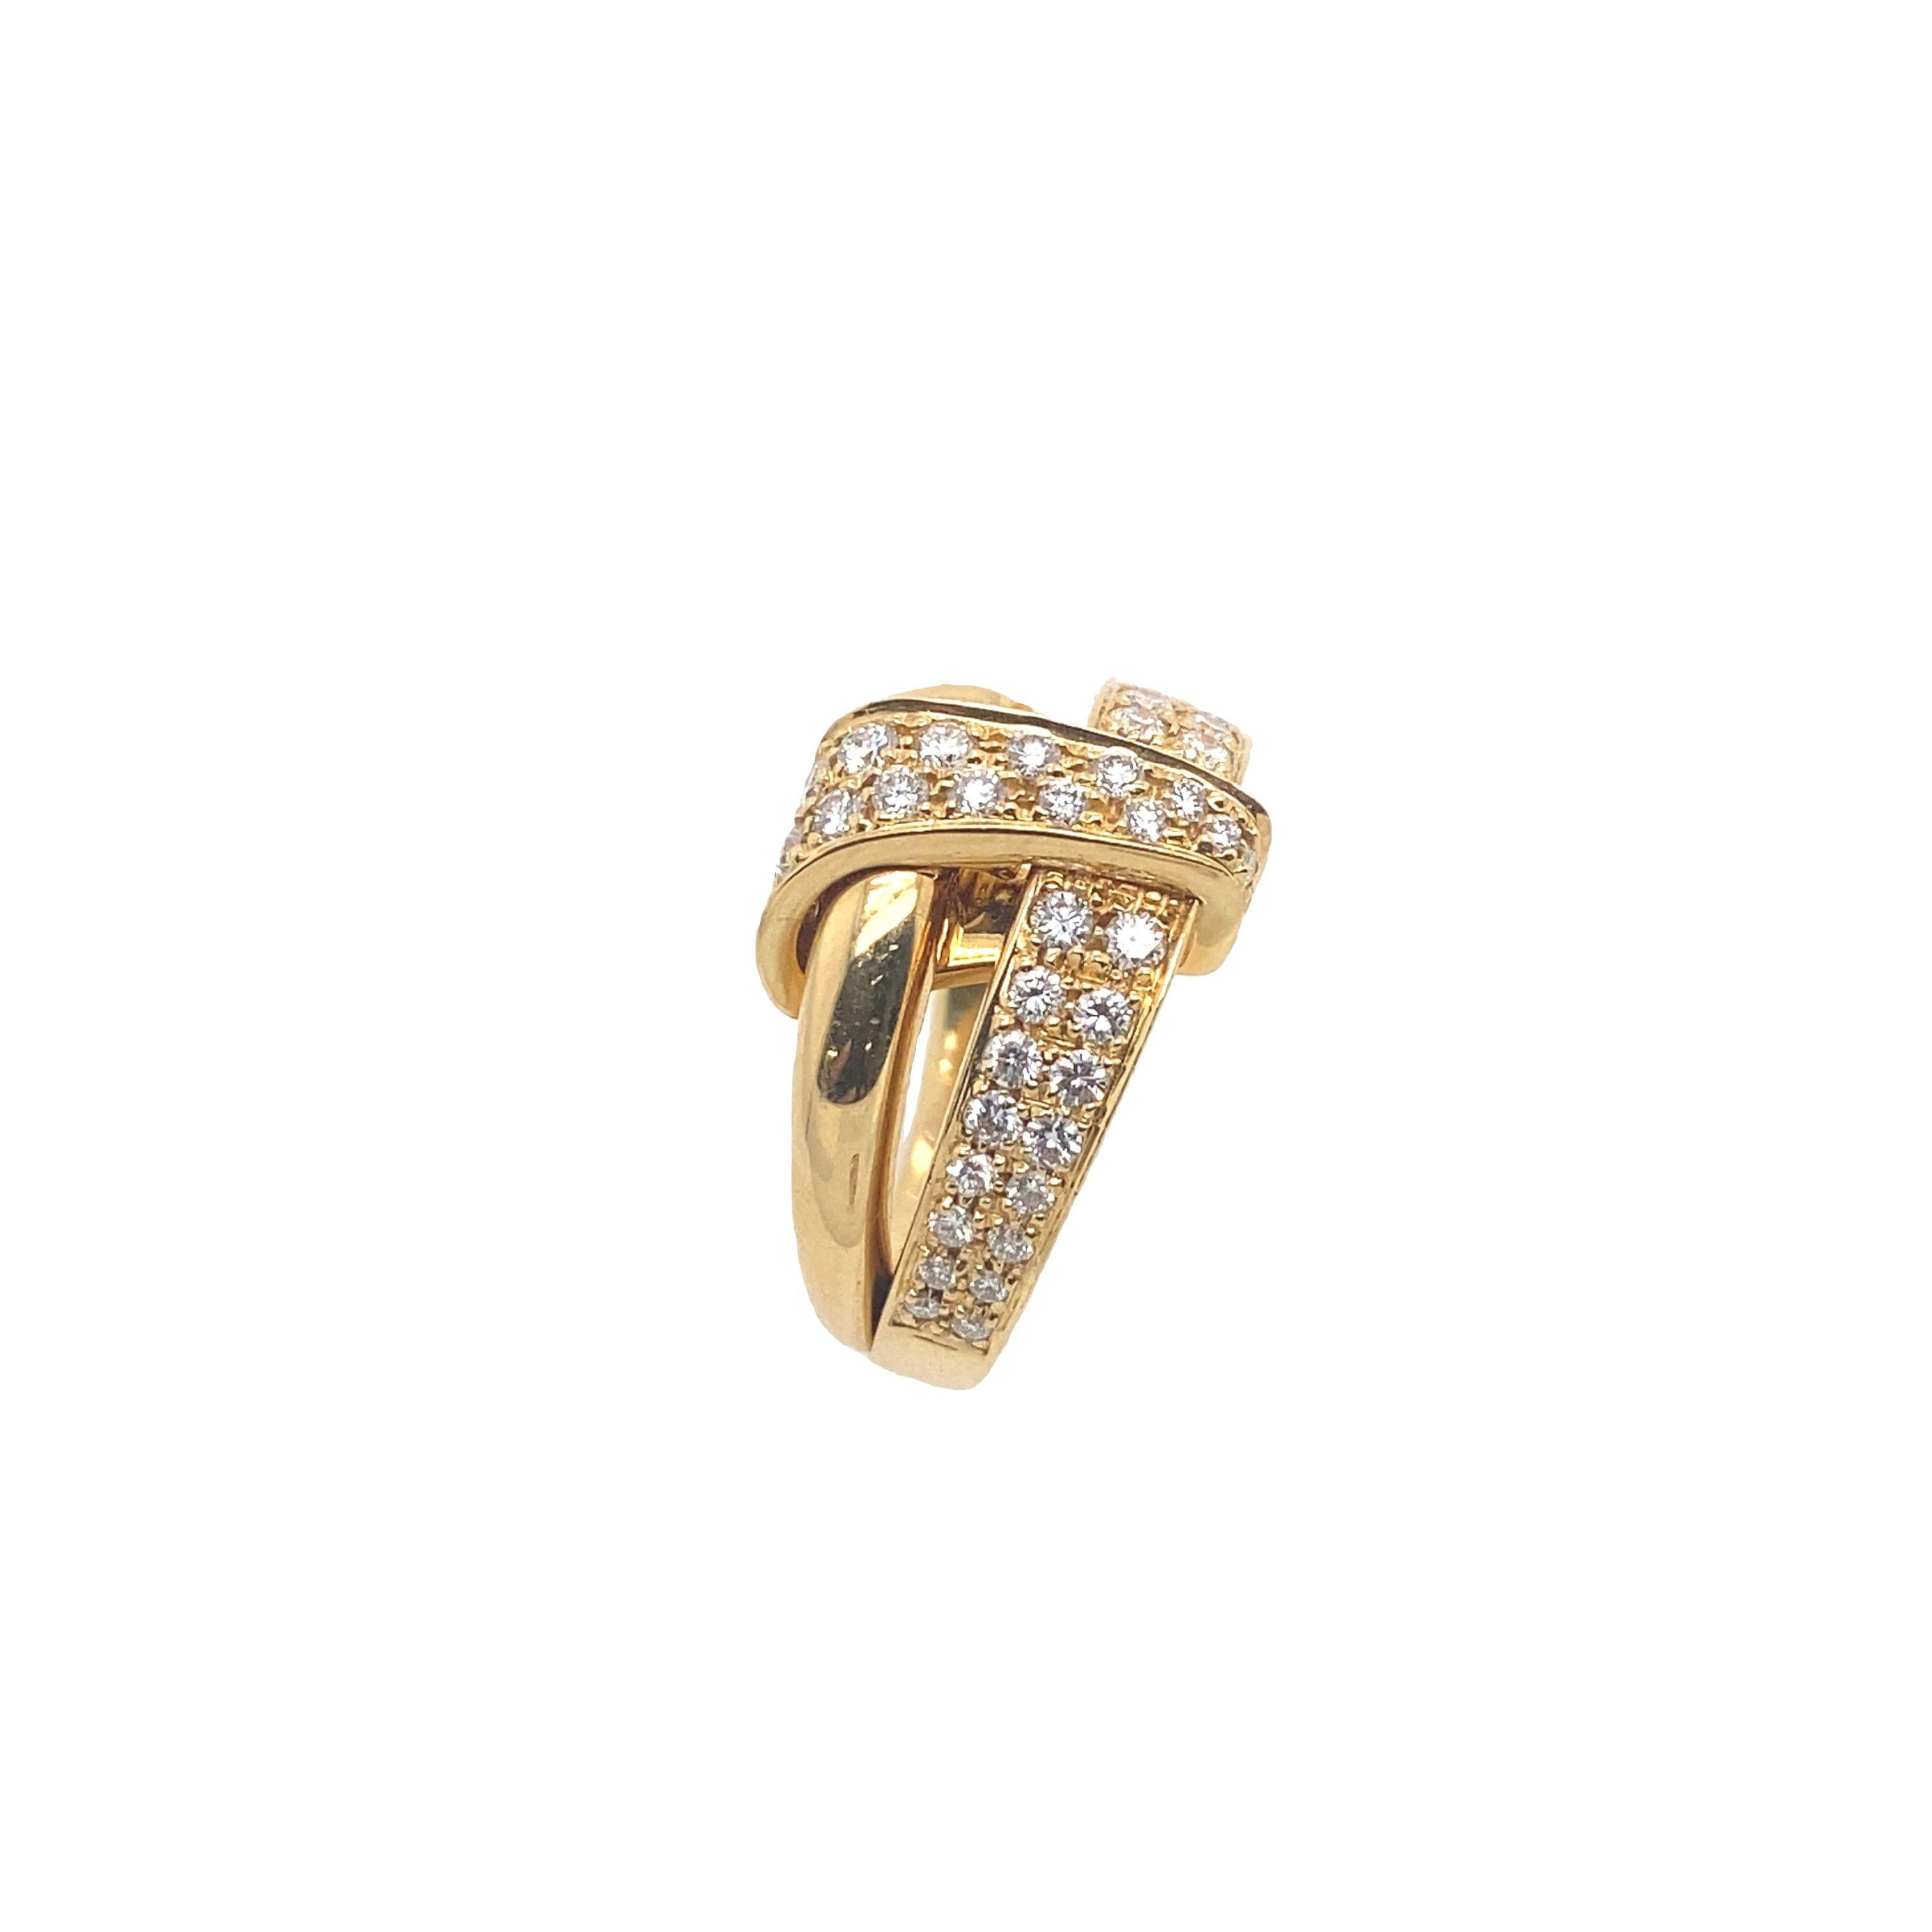  Dieser Asprey Diamantring ist atemberaubend und wäre ein wunderbares Geschenk für einen besonderen Menschen.  Mit 0,65 ct. natürlichen Diamanten im Brillantschliff besetzt und aus 18 ct. Gelbgold gefertigt,  Dieser Ring wird noch viele Jahre lang